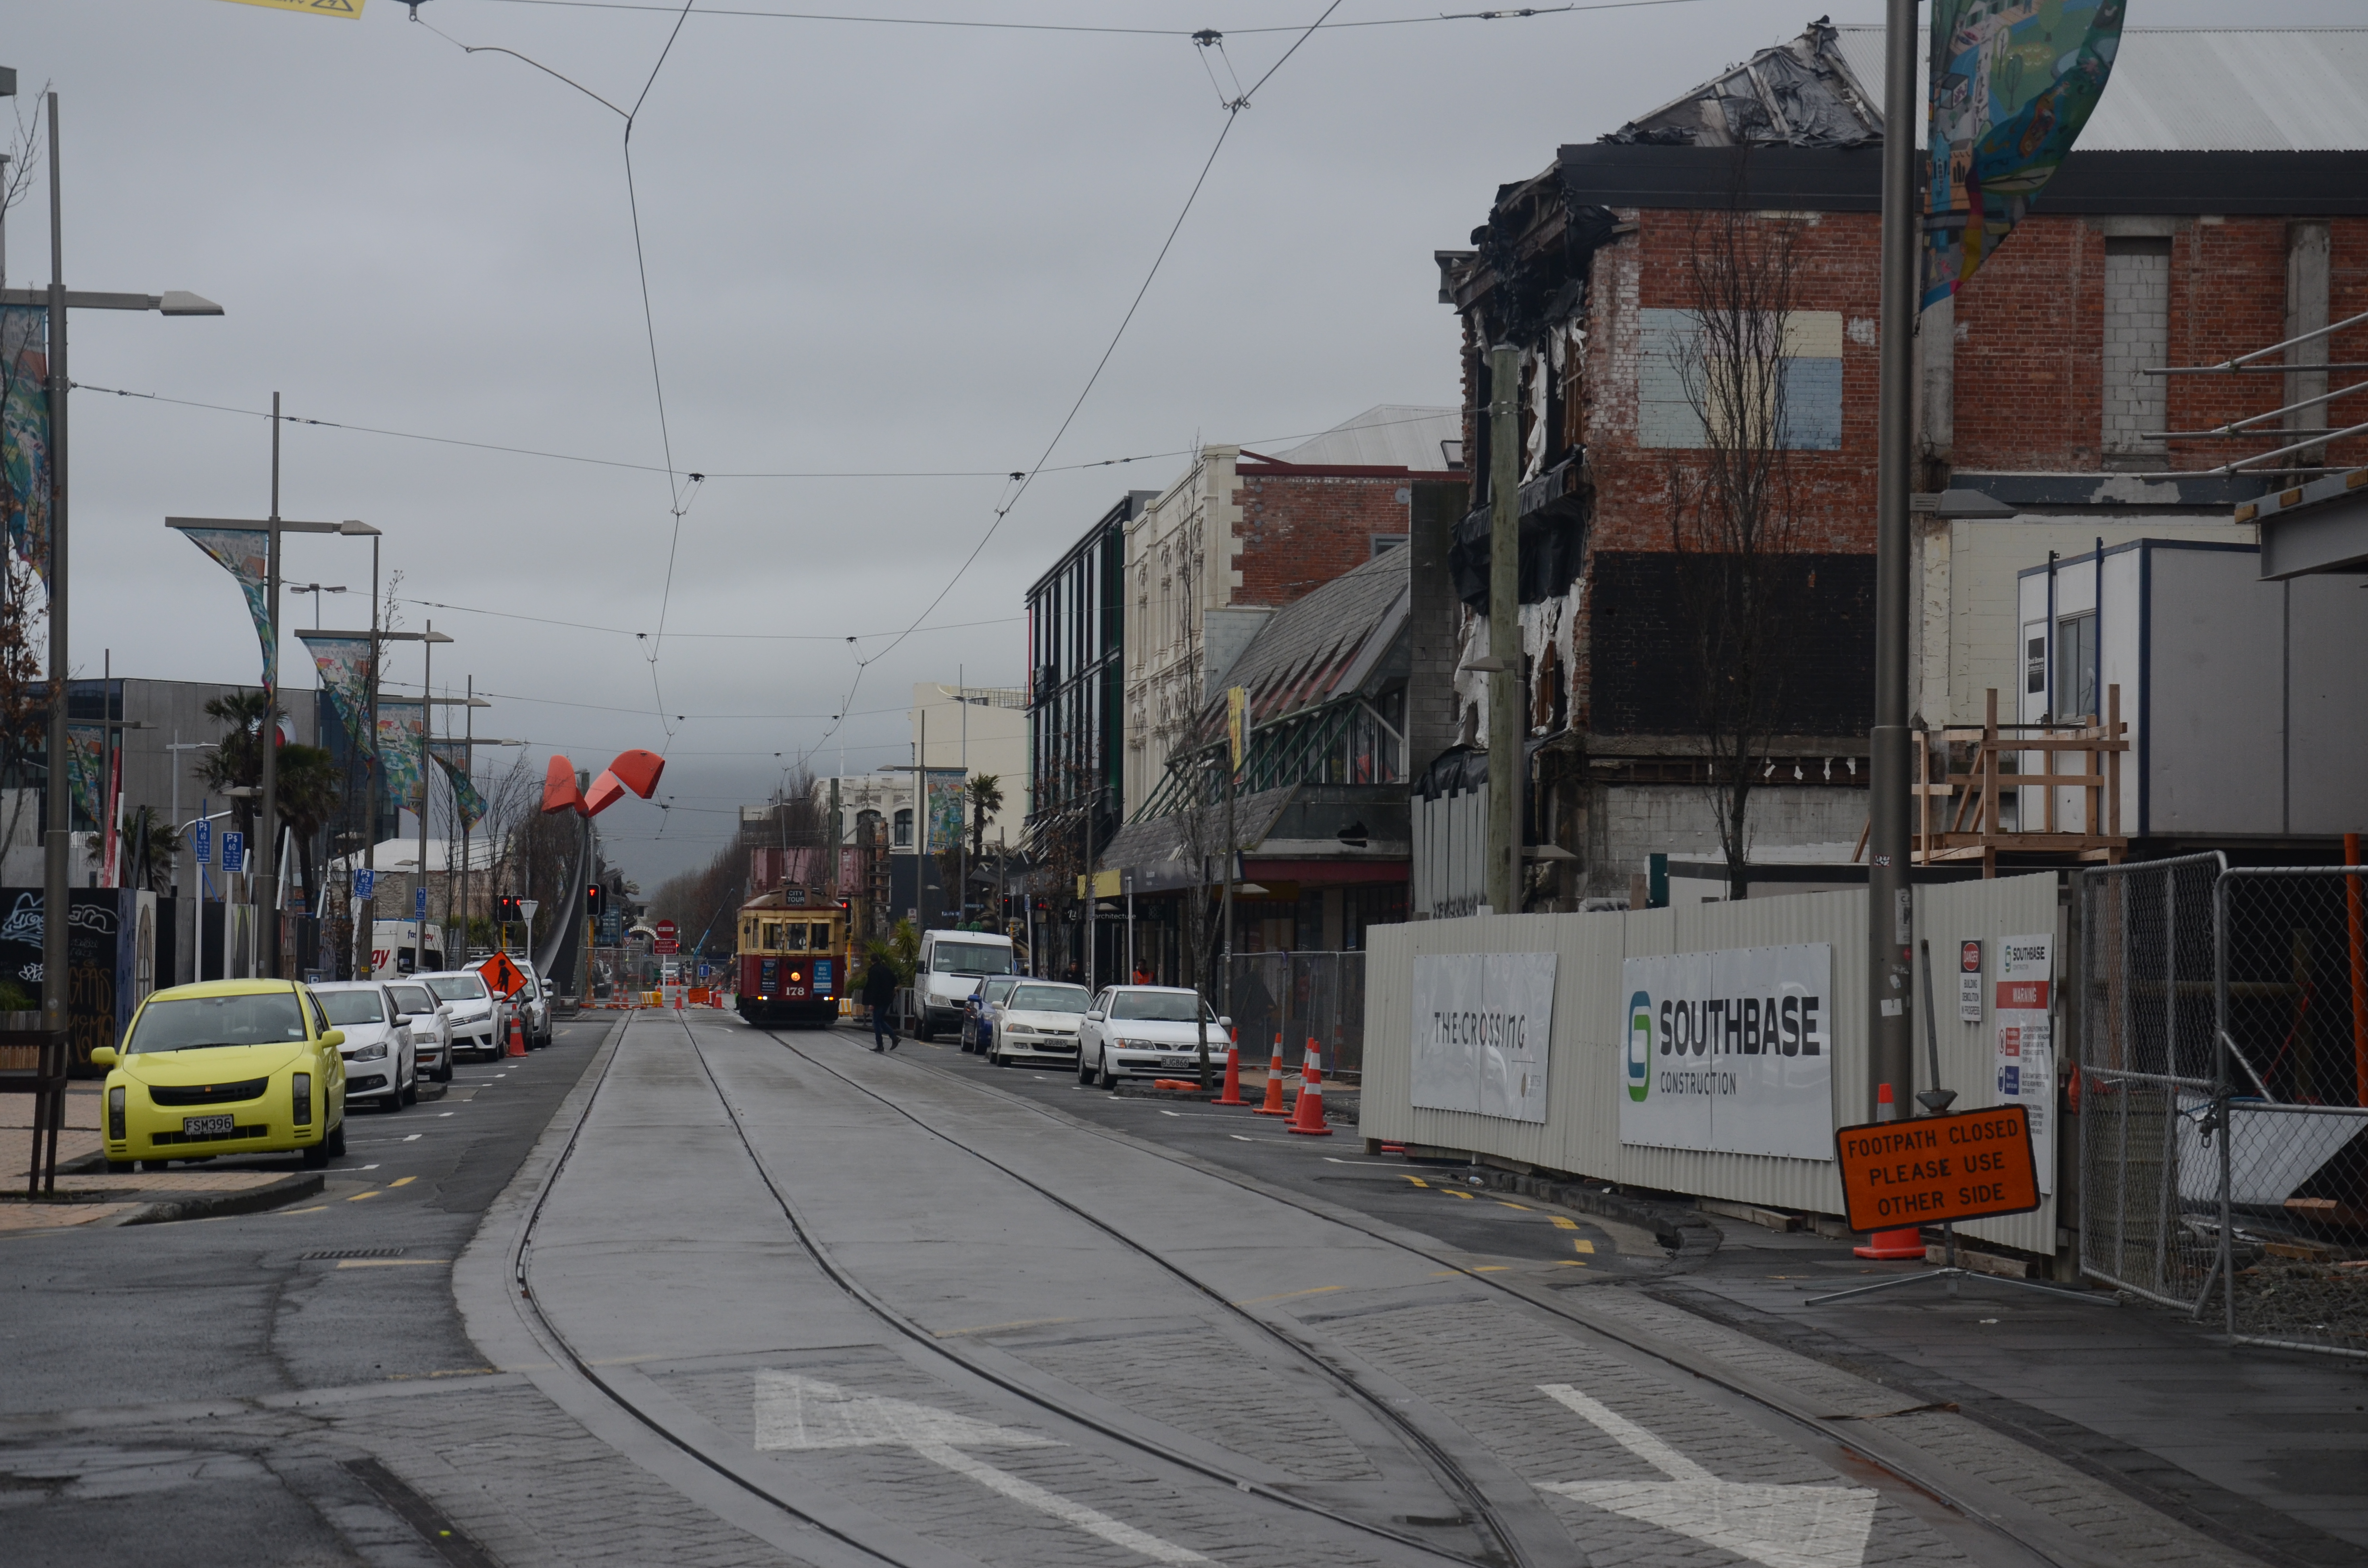 Die Folgen der Erdbebens in der Innenstadt von Christchurch. Ueberall wird mit Hochdruck gebaut, trotzdem sieht man zerstoerte, alte und neue Gebaeude nebeneinander.